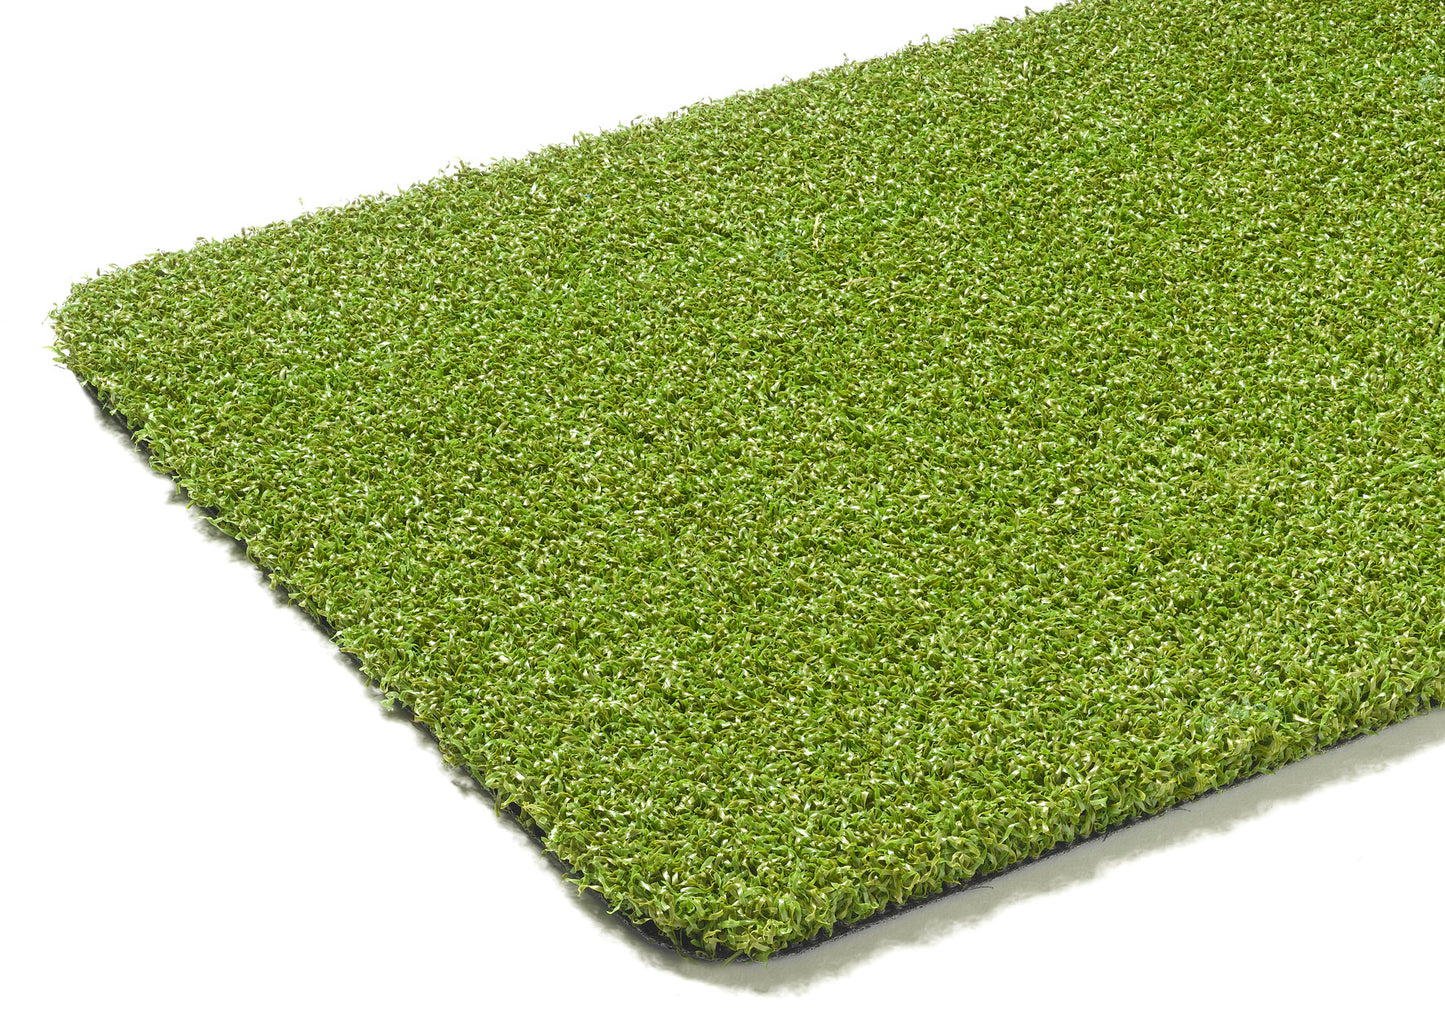 Pro Putt 18mm Artificial Grass